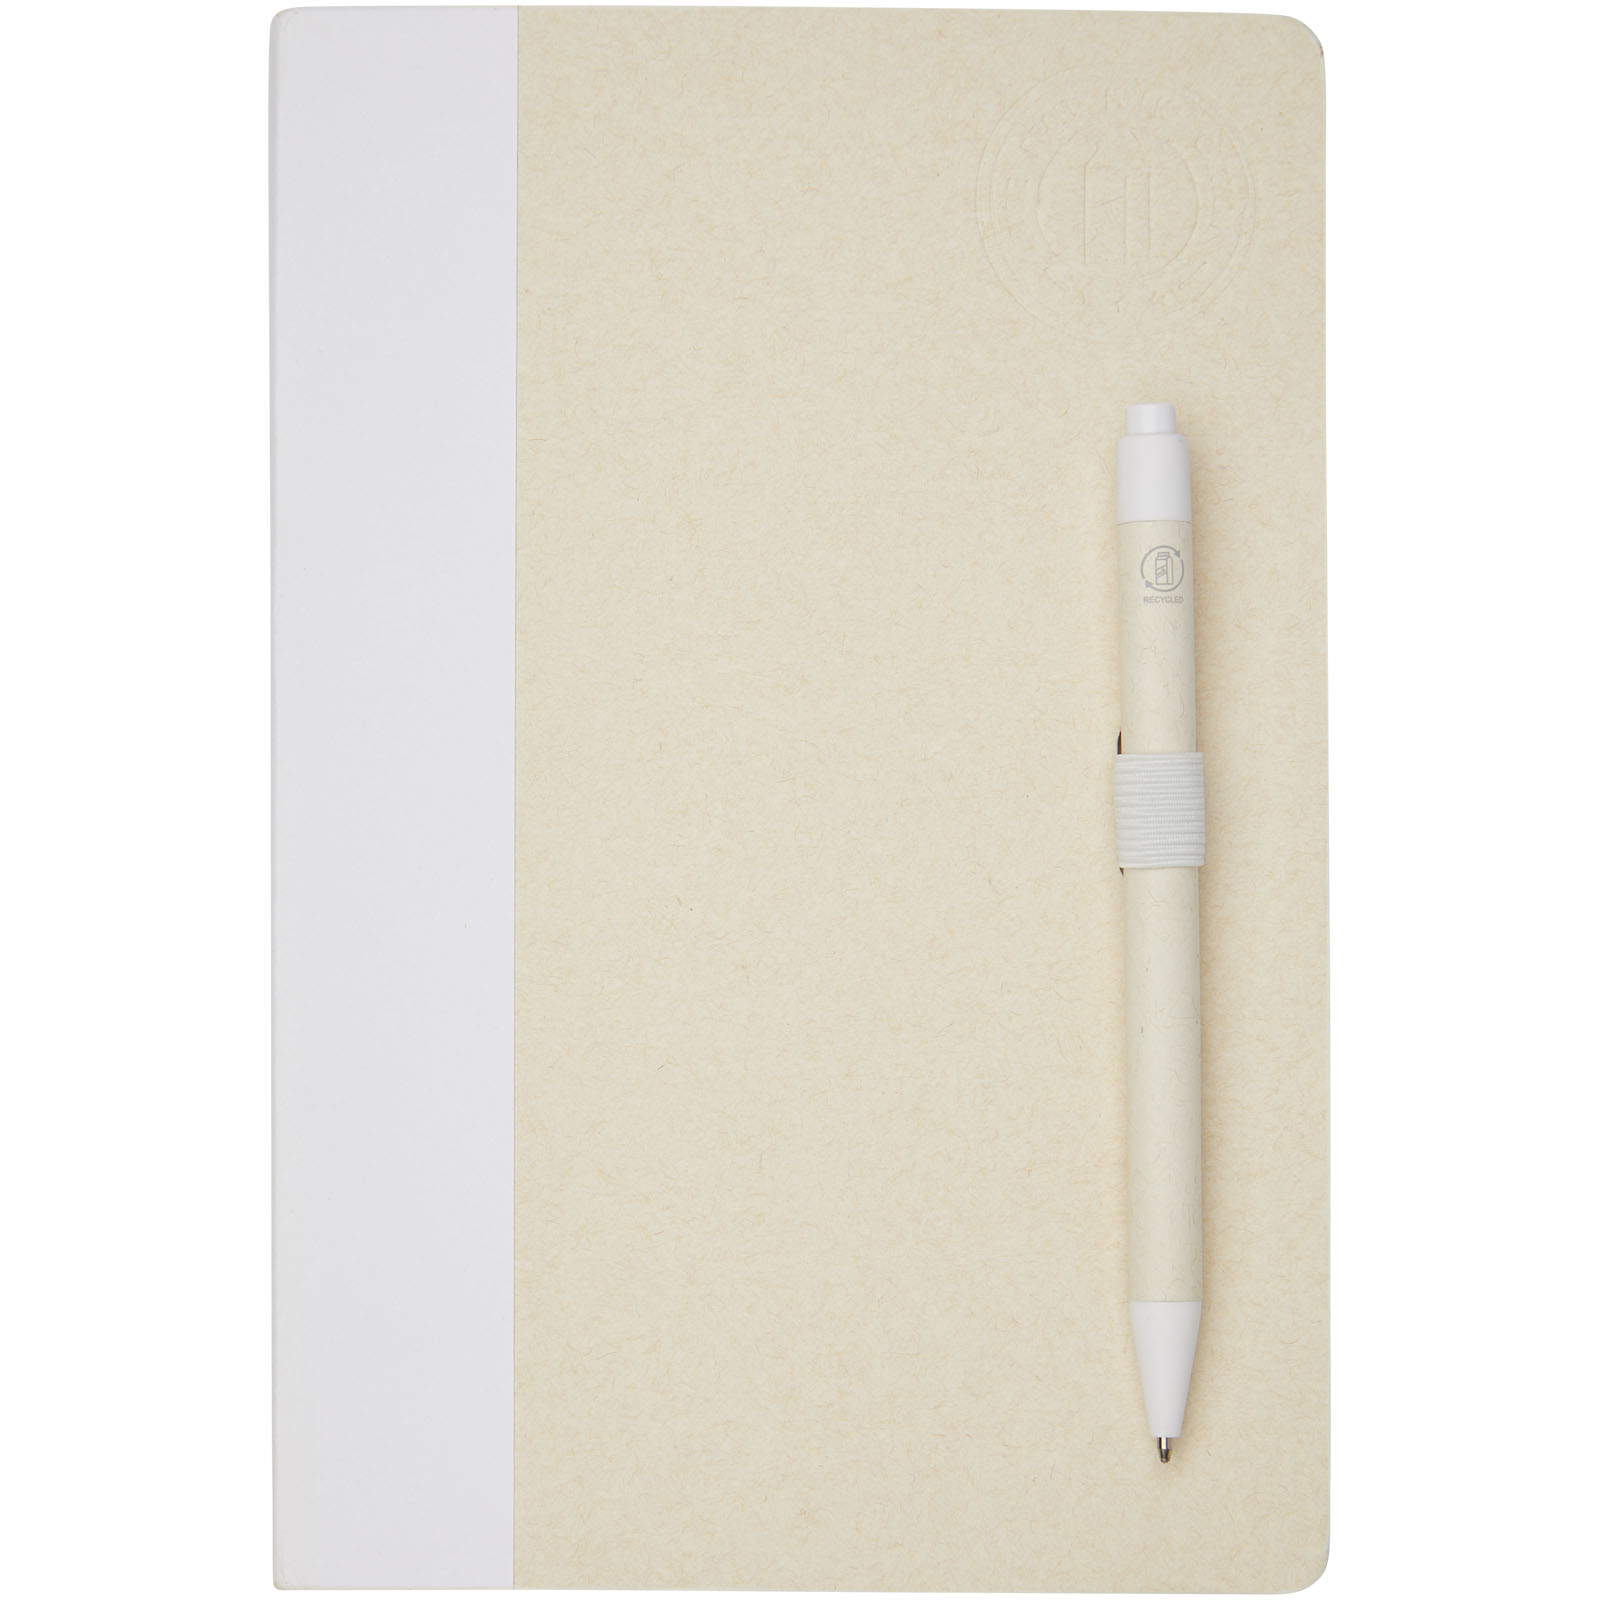 Bloc-notes couverture rigide publicitaires - Ensemble carnet de notes format A5 et stylo bille, à partir de briques de lait recyclées, Dairy Dream - 1